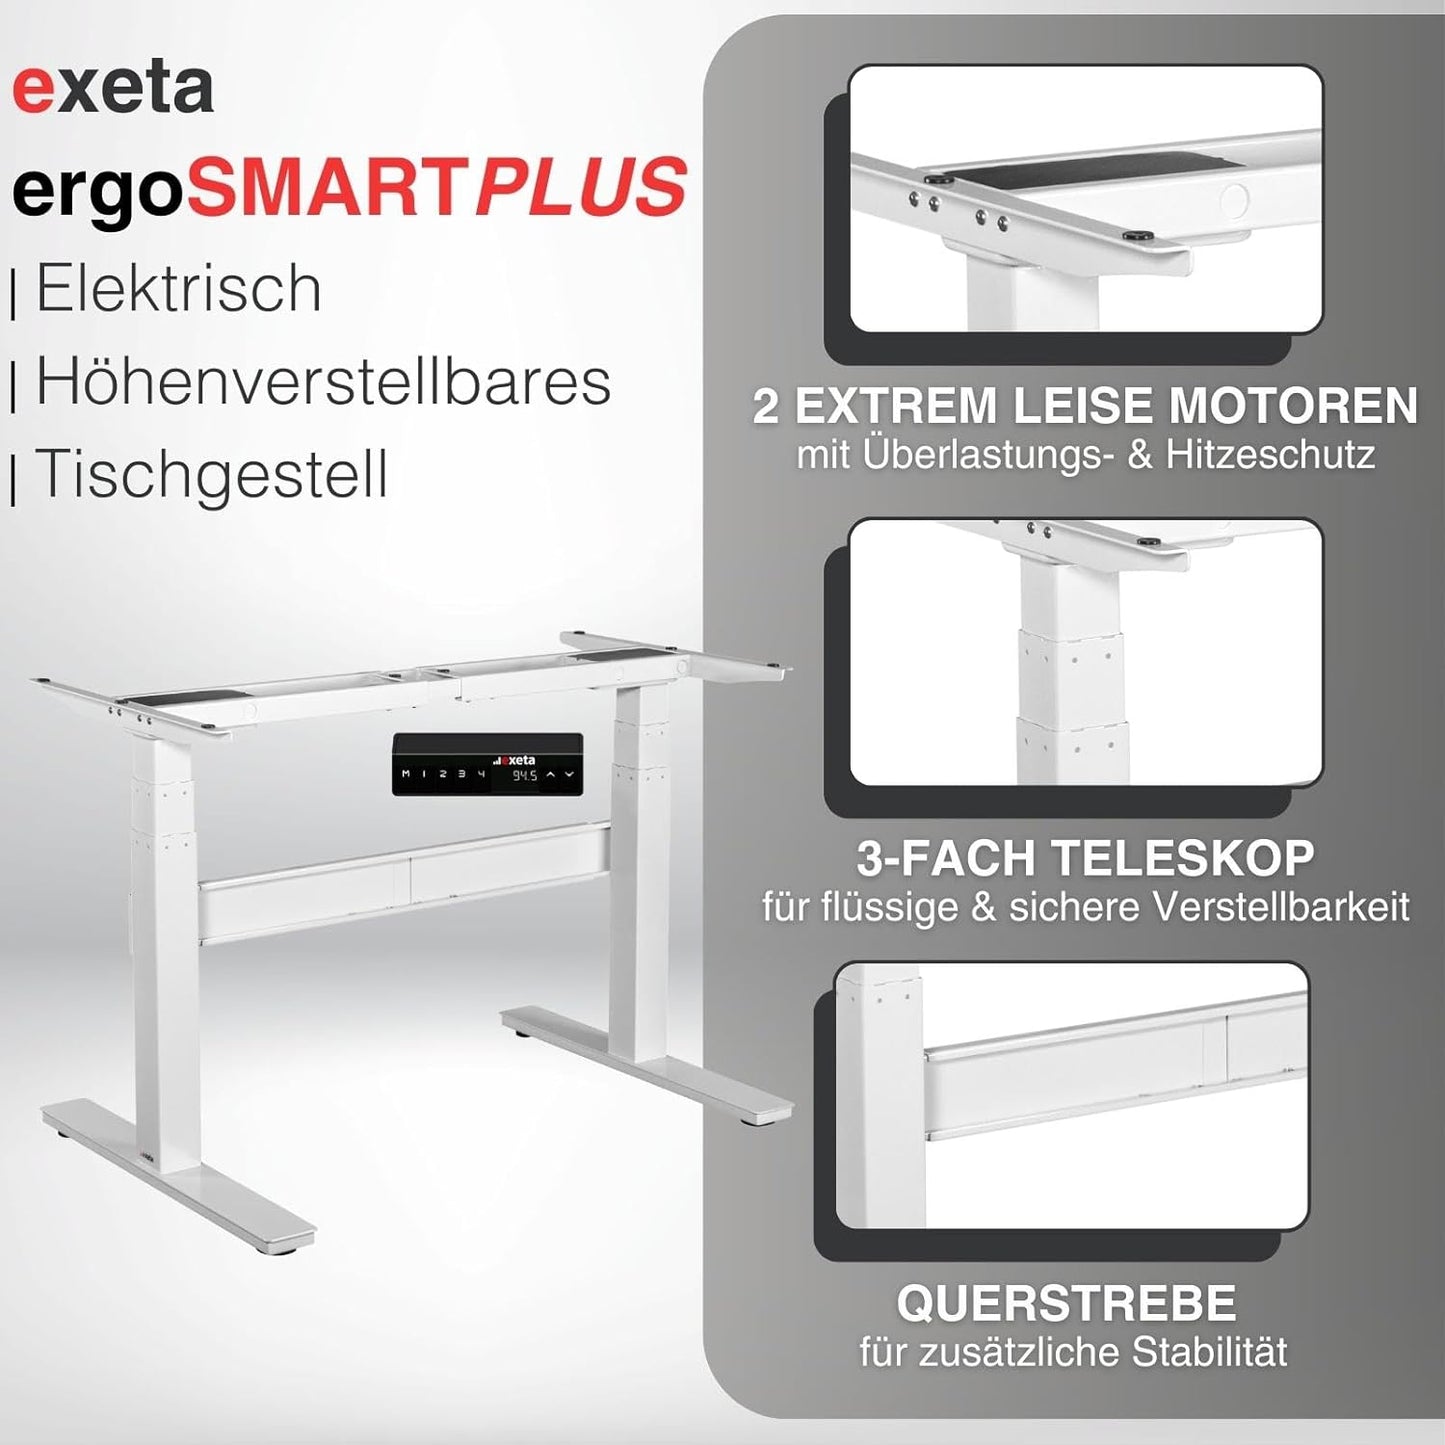 exeta ergoSMARTPLUS höhenverstellbarer Schreibtisch elektrisch Tischgestell weiß Details